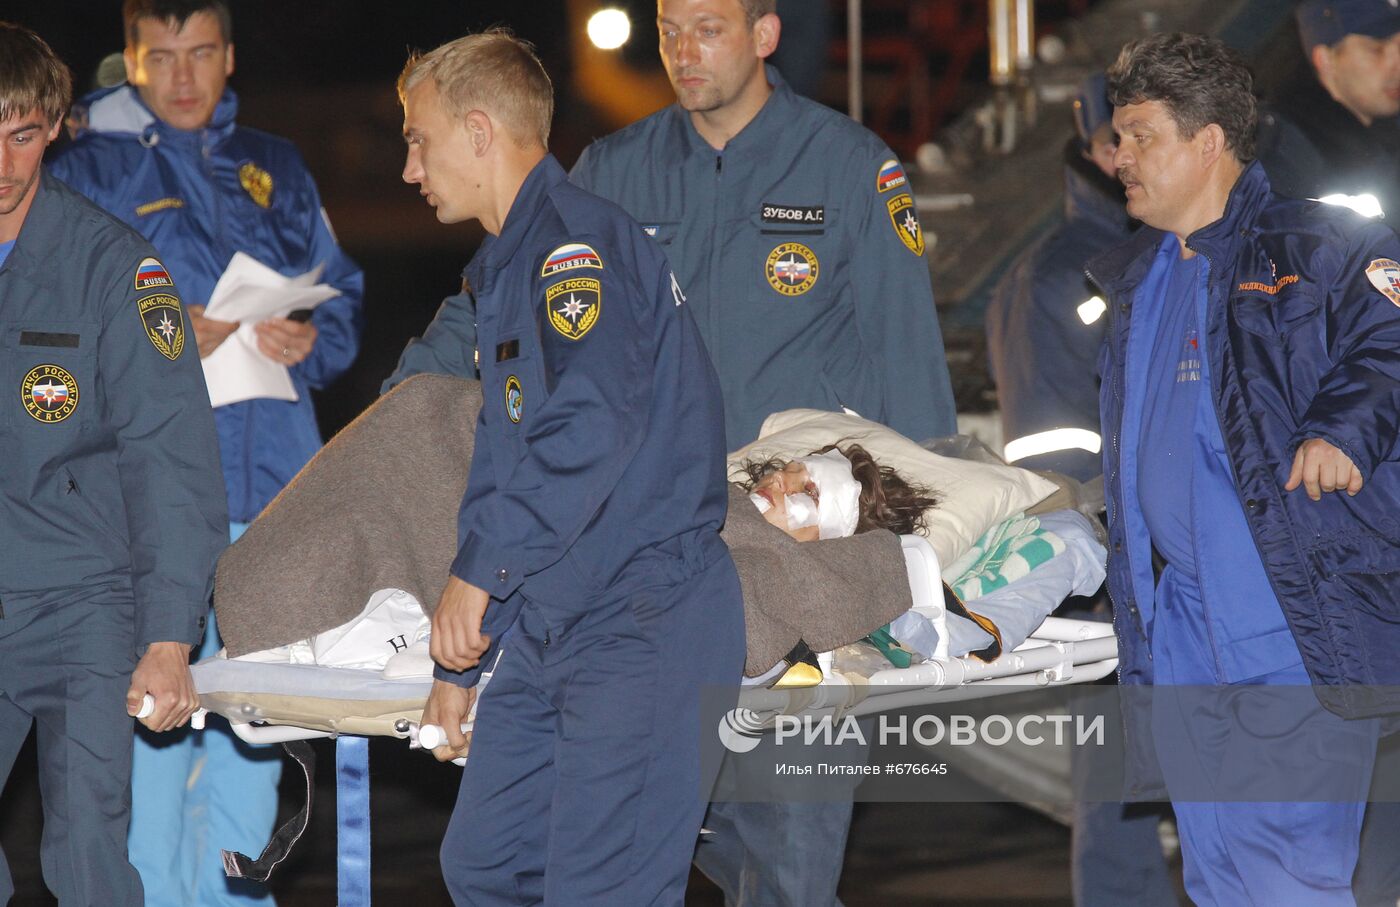 Прибытие в Москву граждан России, пострадавших в Анталье